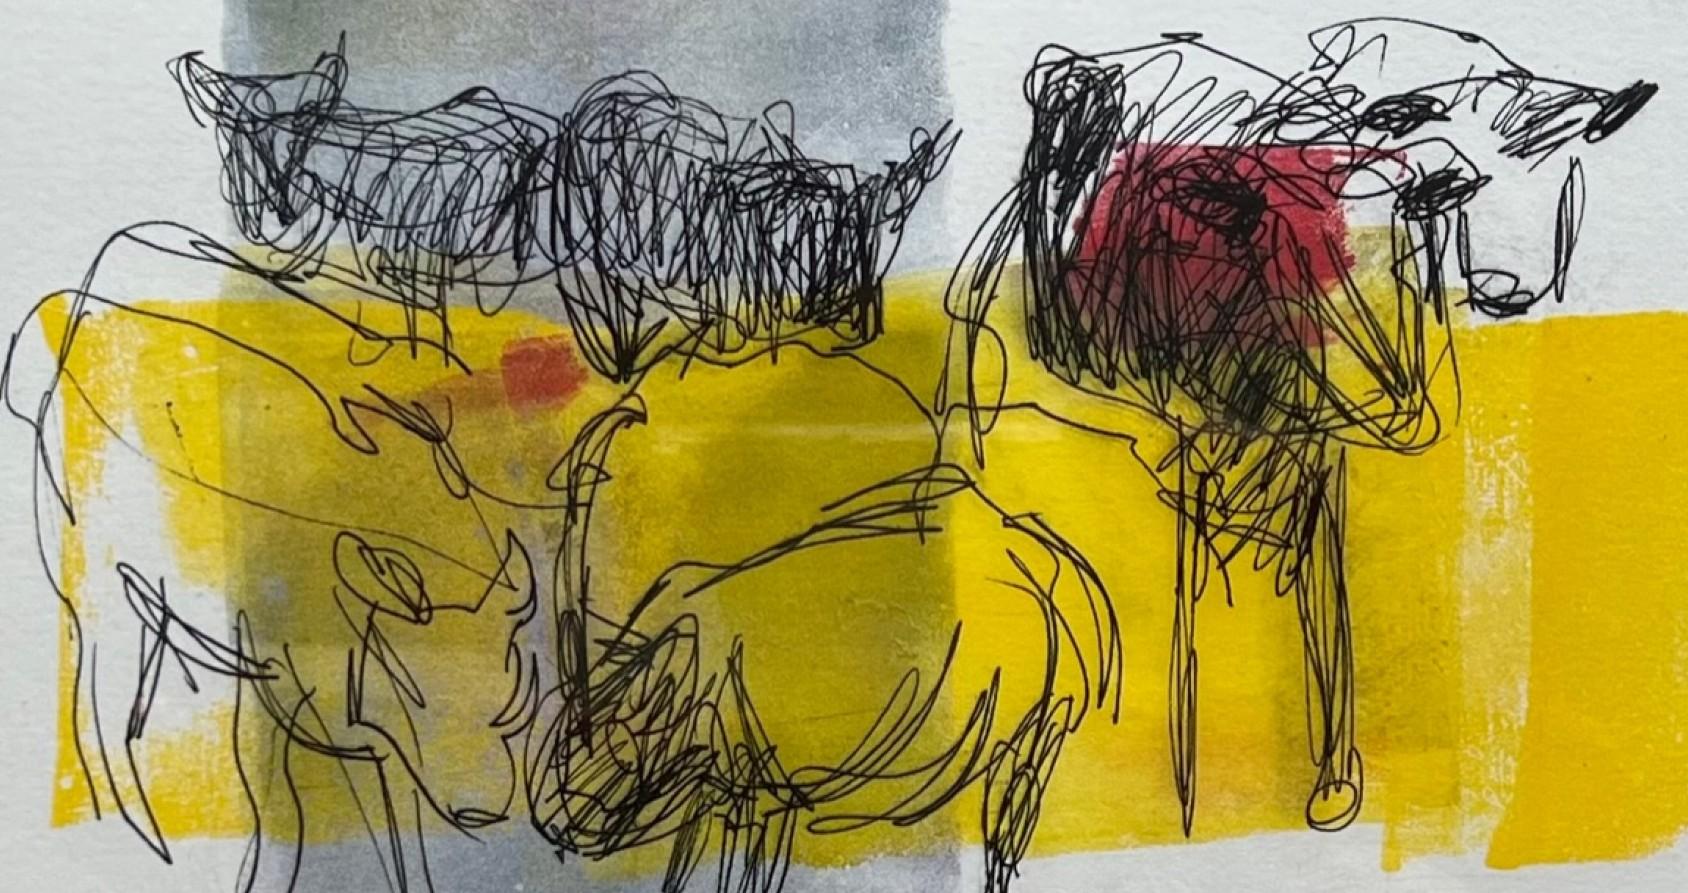   Kühe, Monotypie und Collage im Stil der abstrakten Malerei  Figurative Kunst  (Abstrakter Expressionismus), Mixed Media Art, von Charlotte Seifert